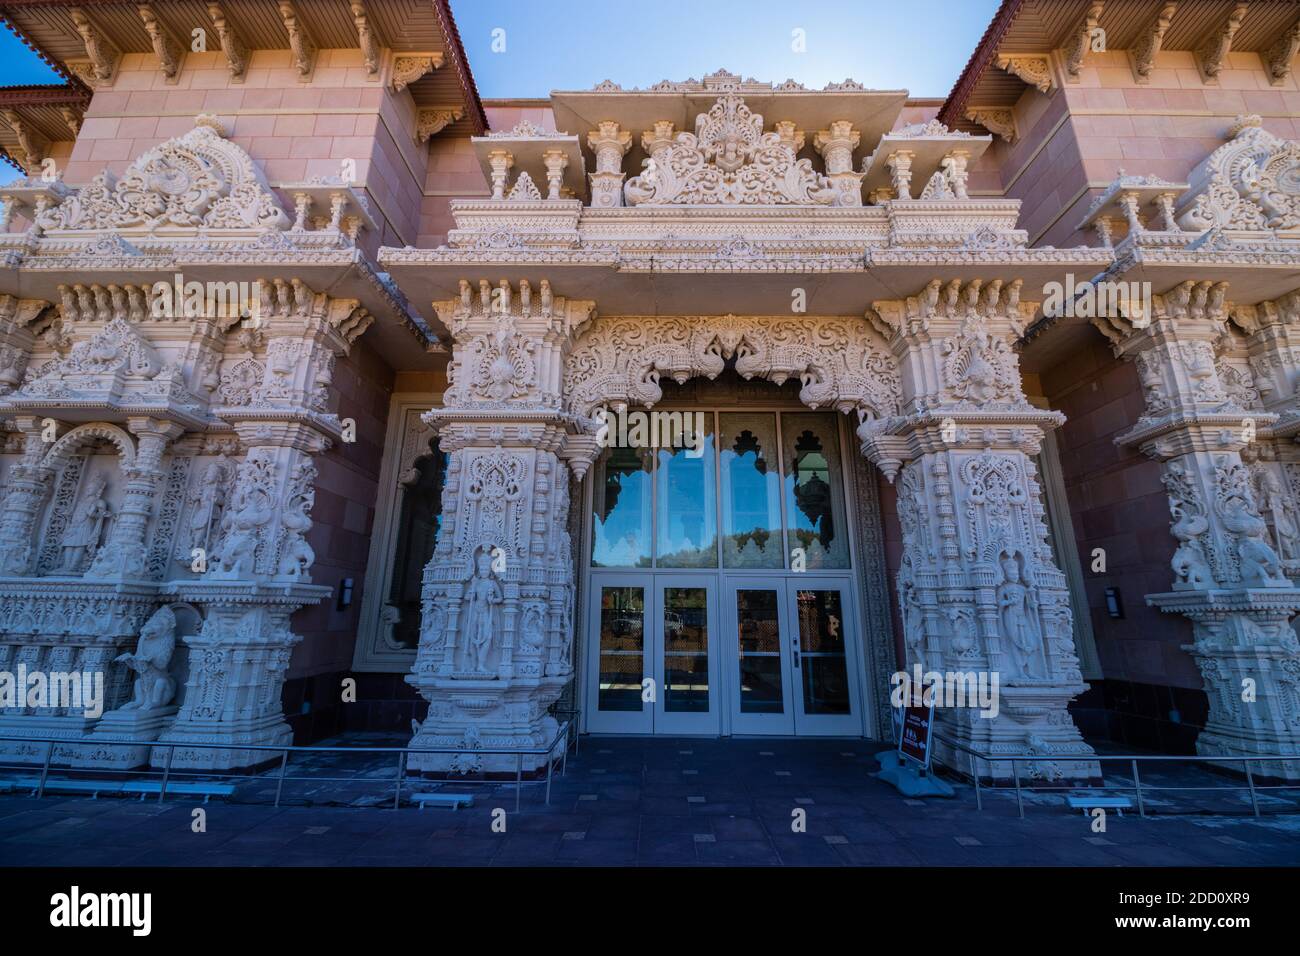 Hindu-Tempel in Nordamerika haben ihren eigenen Charme. Erbaut von wohlhabenden Einwanderern, sind dies soziale Einstellungen, die Menschen aus Indien und SR anziehen Stockfoto